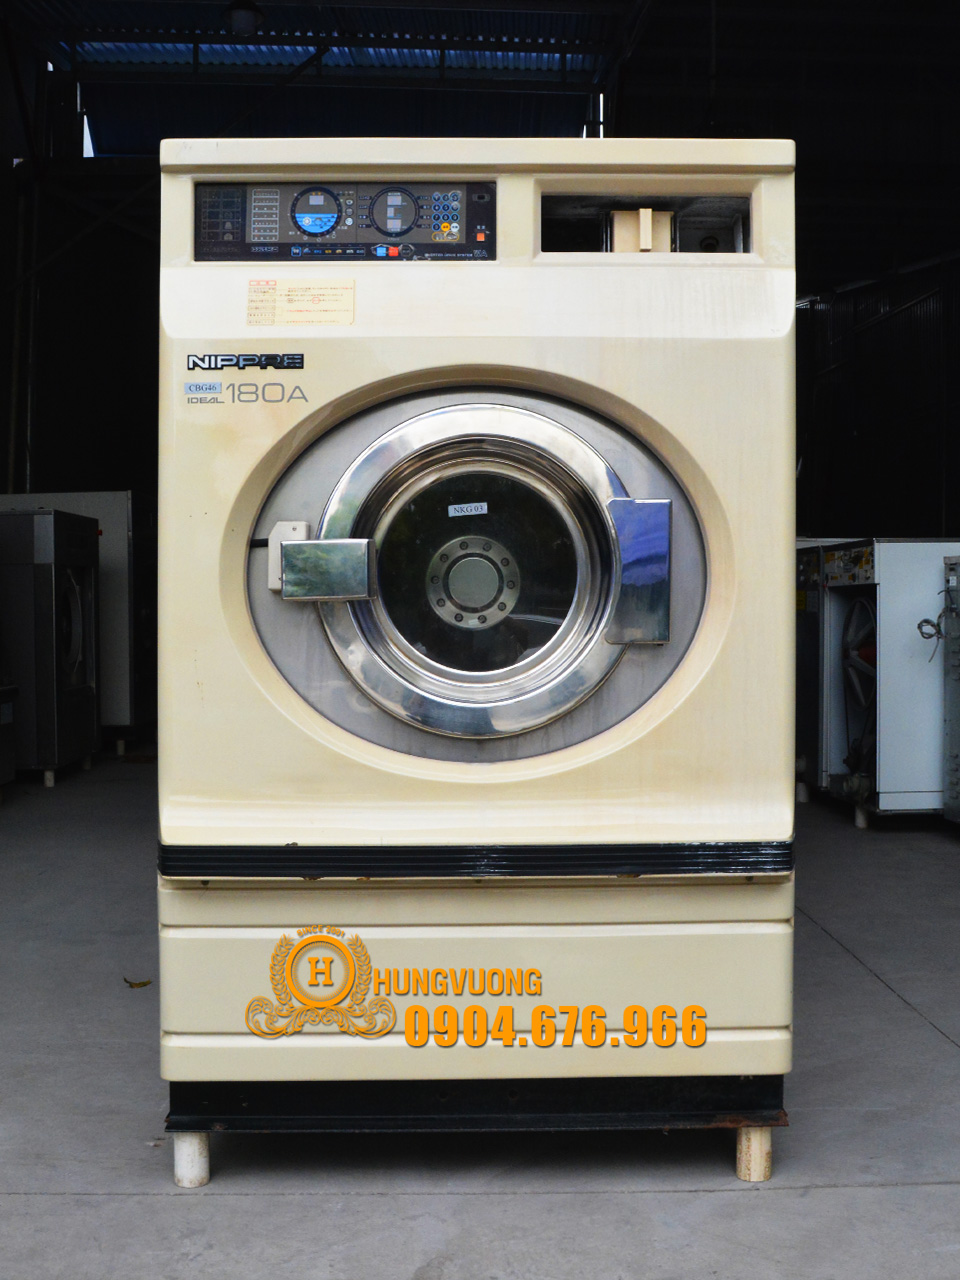 Mặt trước máy giặt công nghiệp NIPPRE, 18kg, chân chống rung, biến tần, Nhật Bản